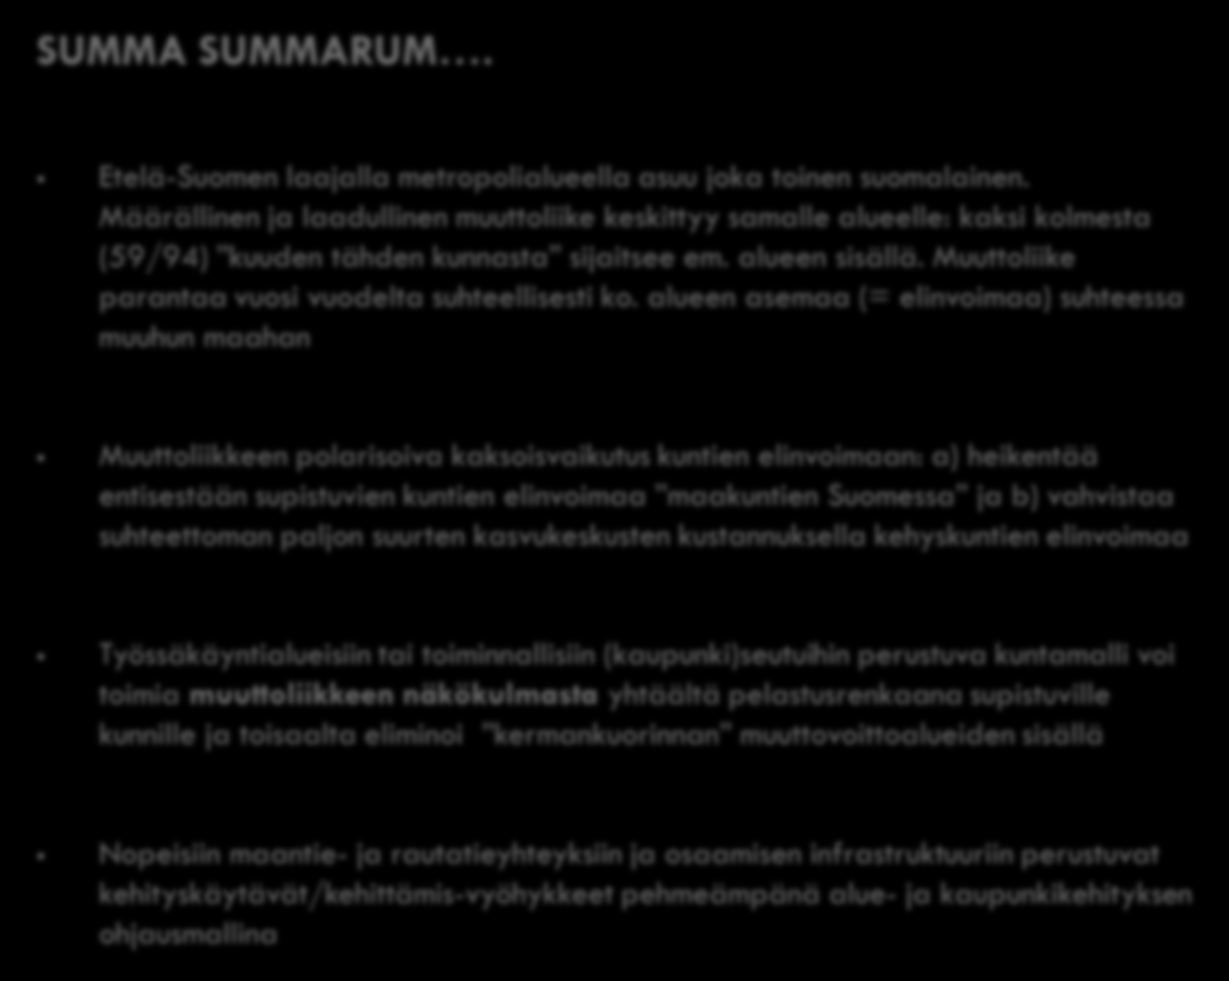 SUMMA SUMMARUM. Etelä-Suomen laajalla metropolialueella asuu joka toinen suomalainen.